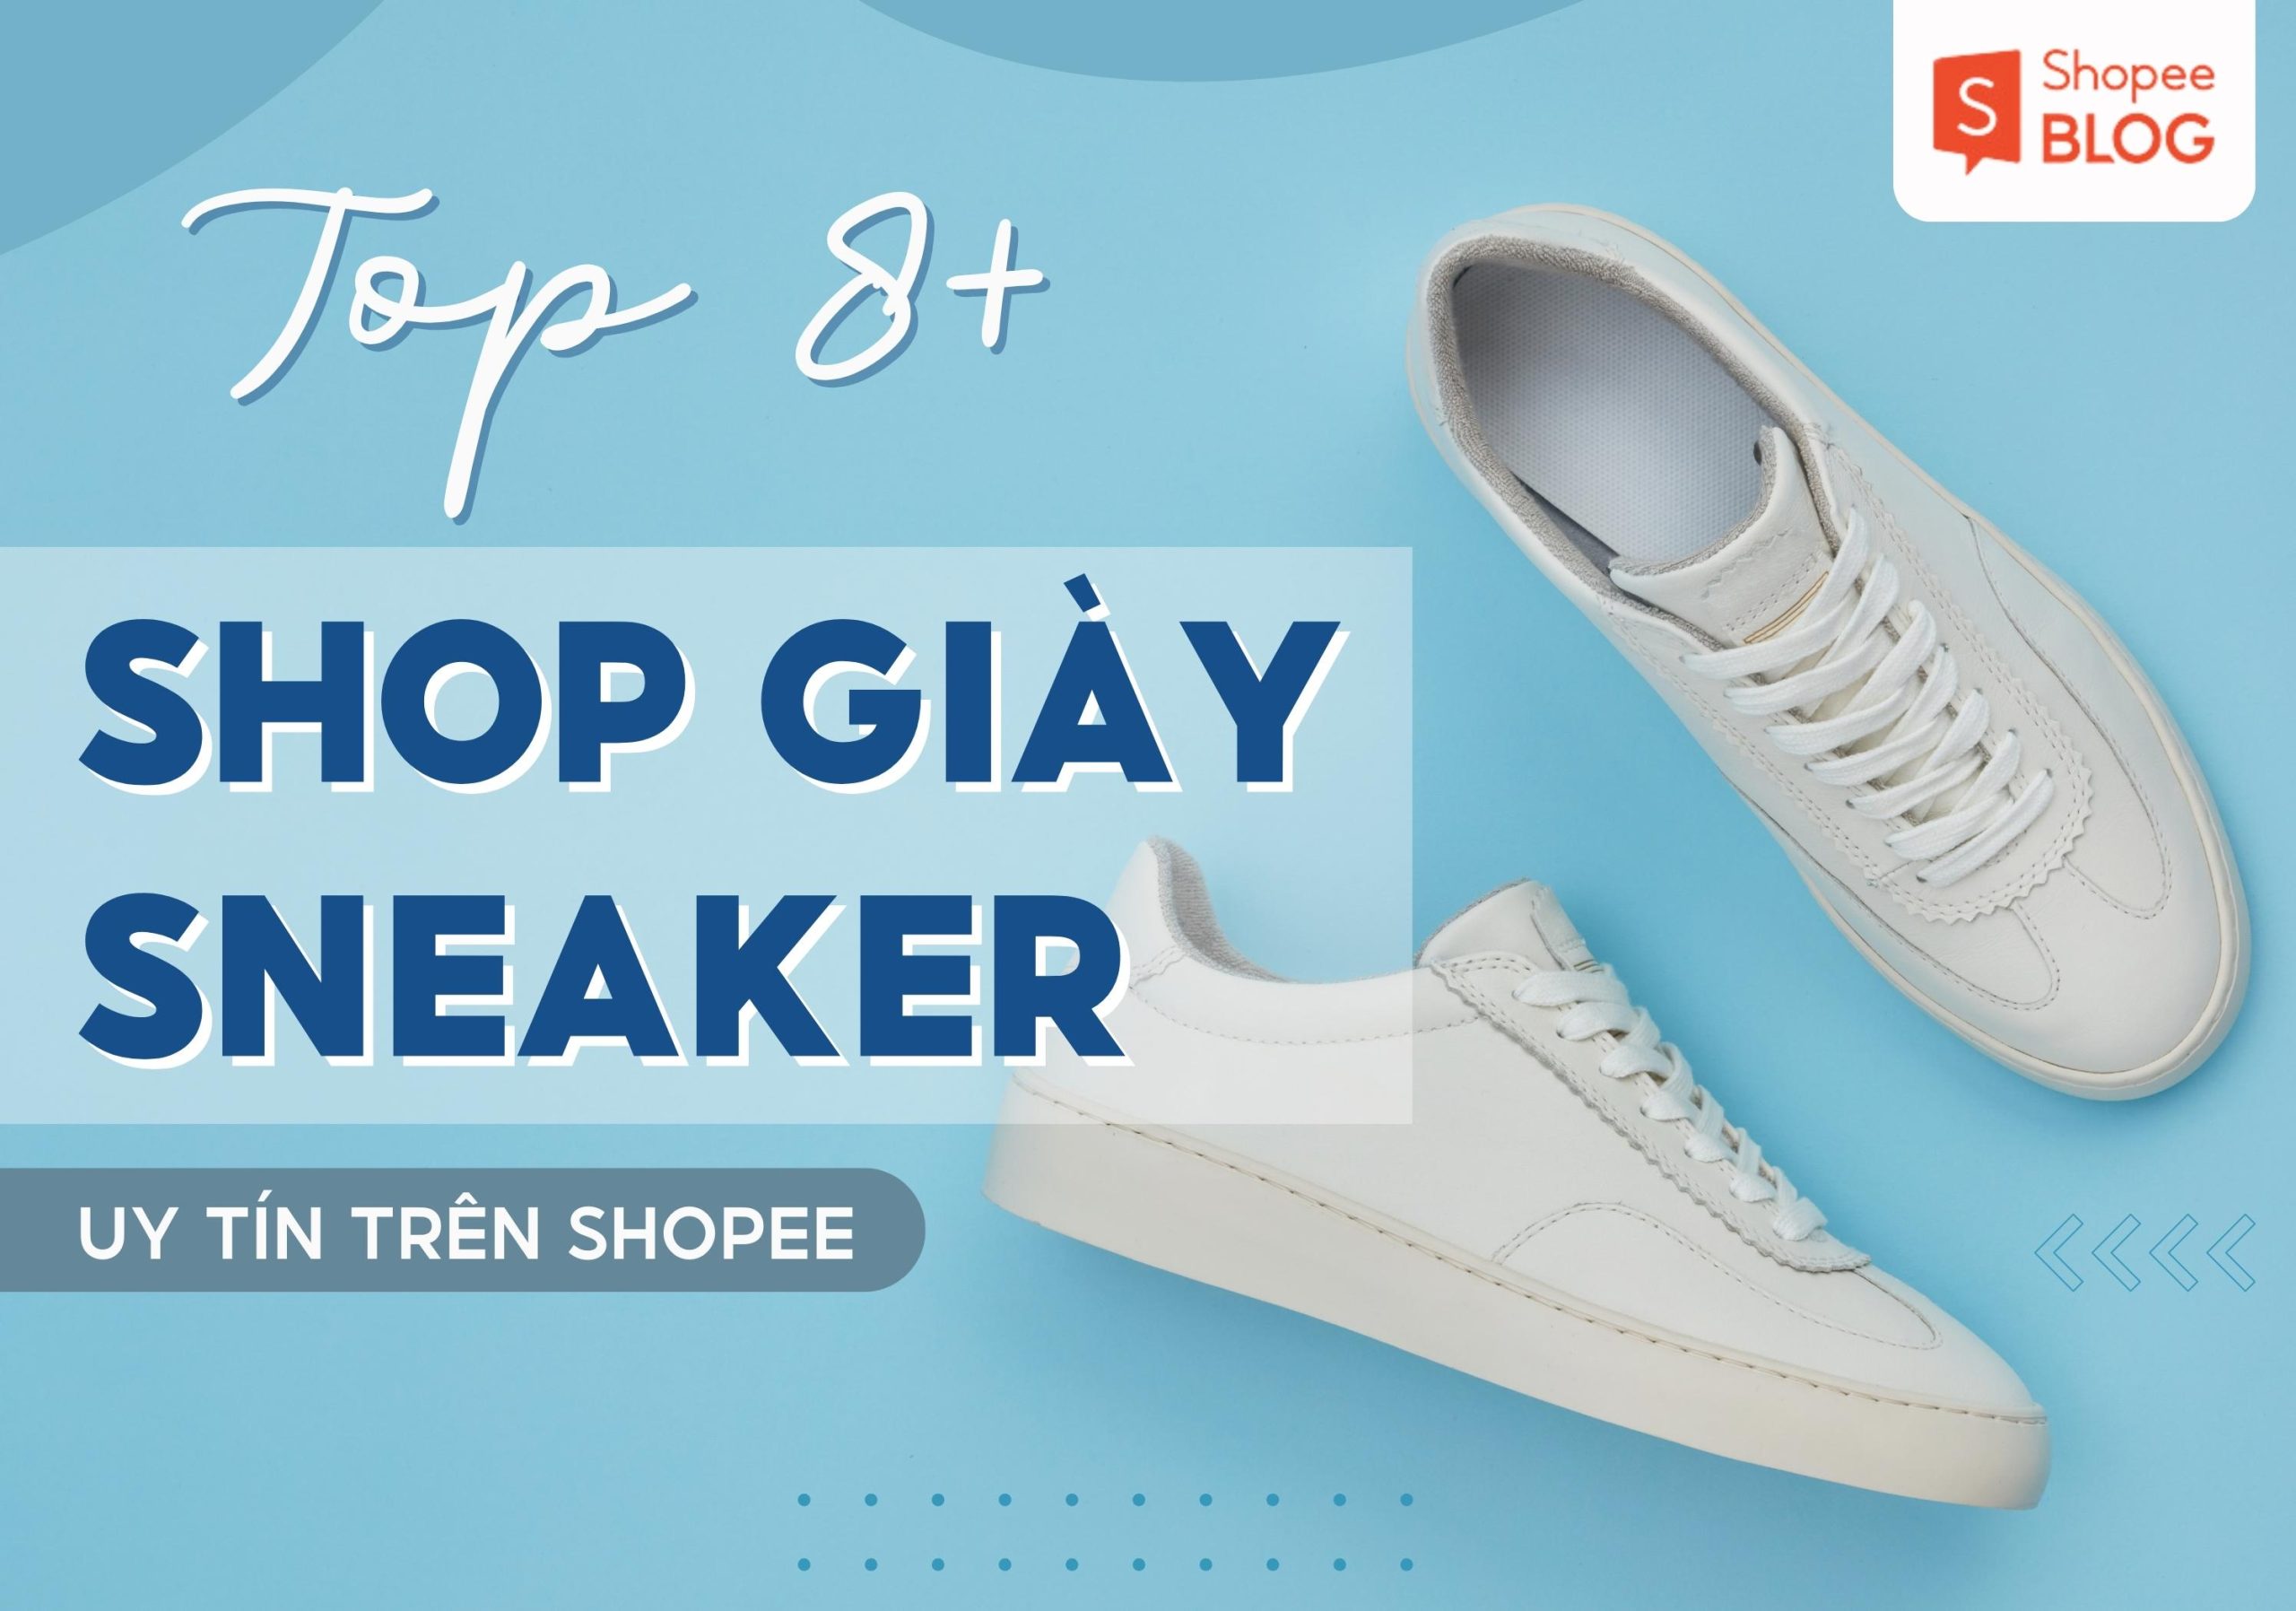 Shop bán giày sneaker uy tín trên Shopee